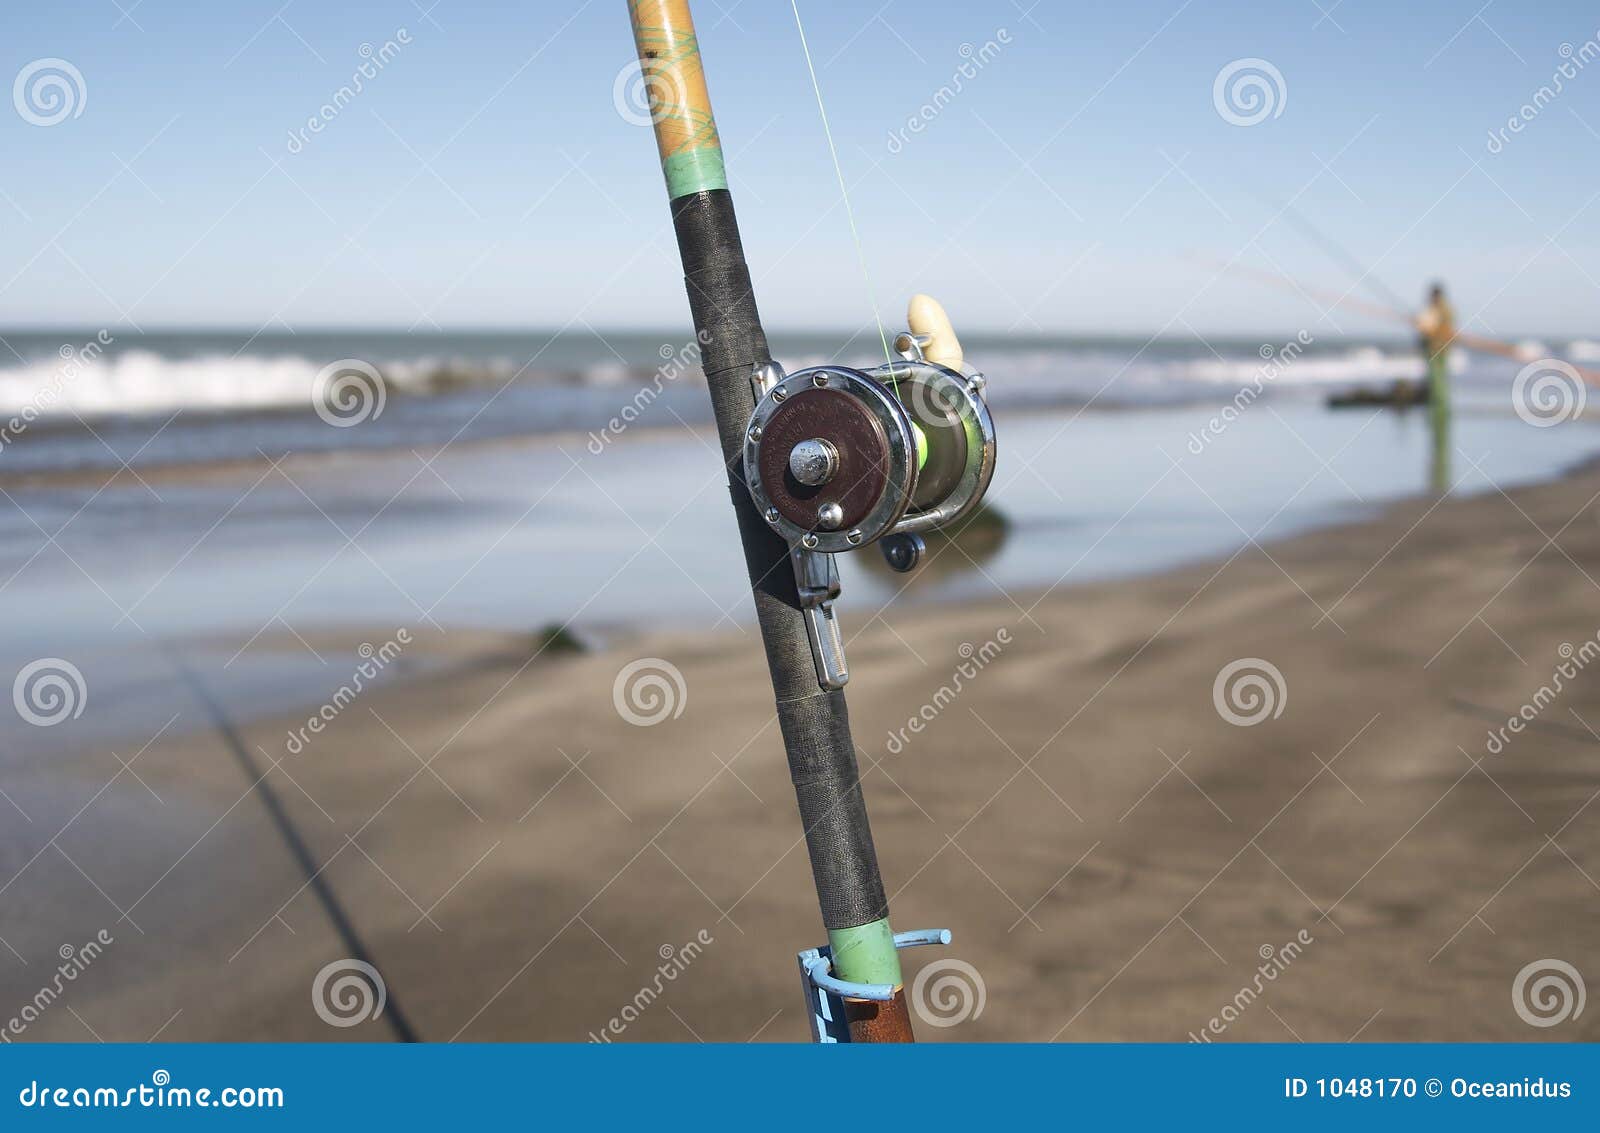 Caña En La Costa Del Mar Noche De Pesca Fotos, retratos, imágenes y  fotografía de archivo libres de derecho. Image 80303428